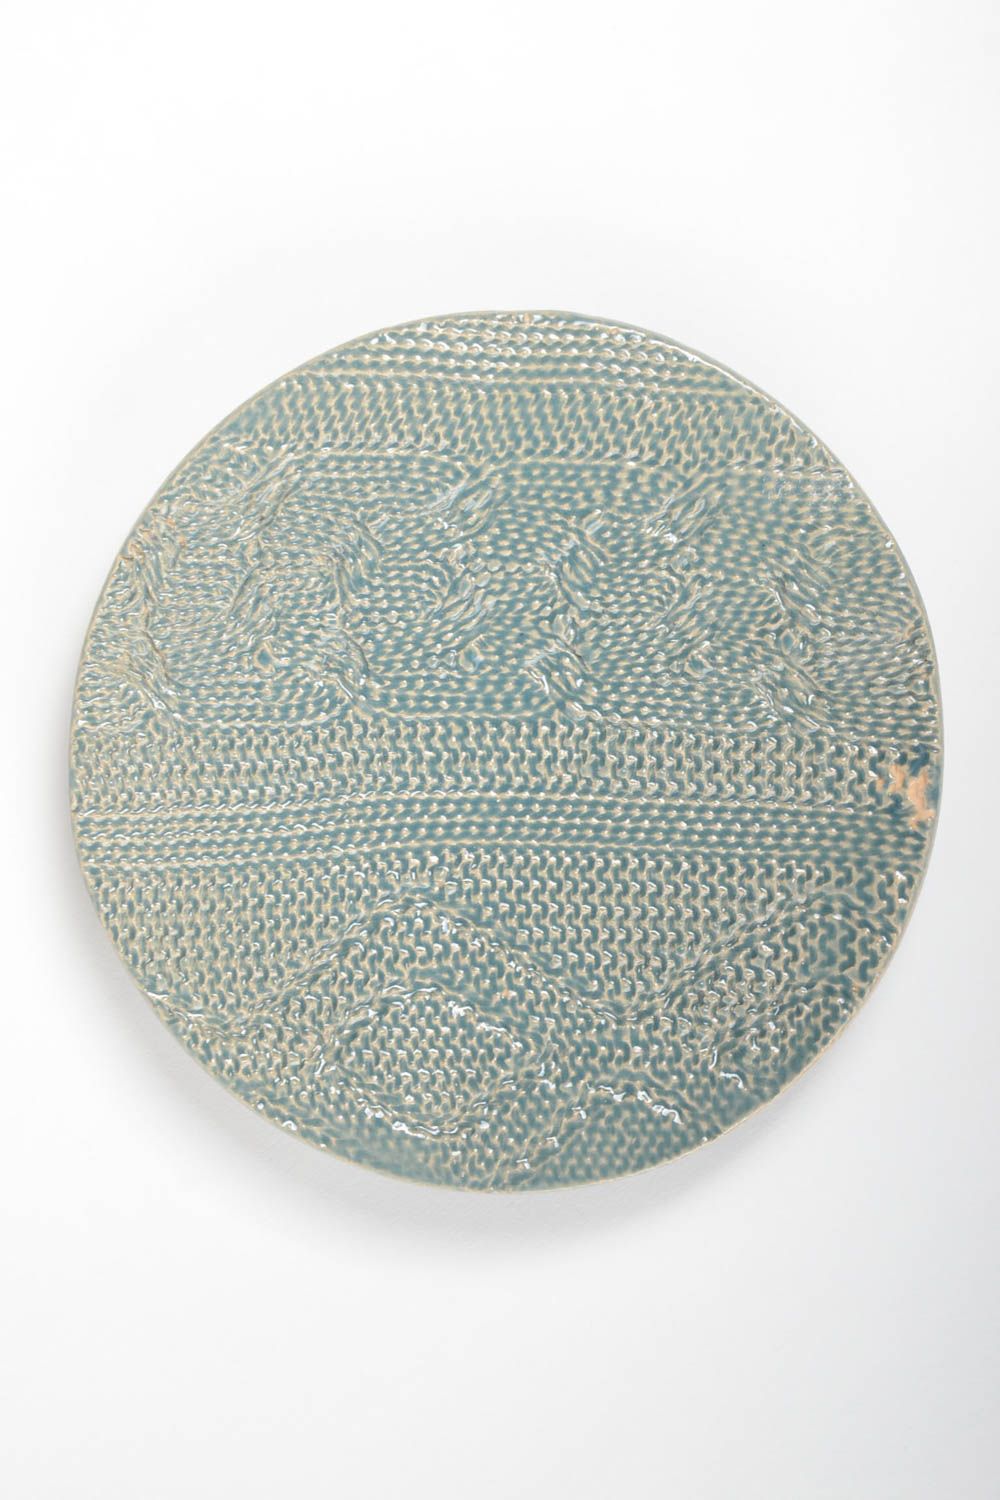 Assiette en argile faite main ronde bleue imitation du tricotage originale photo 2